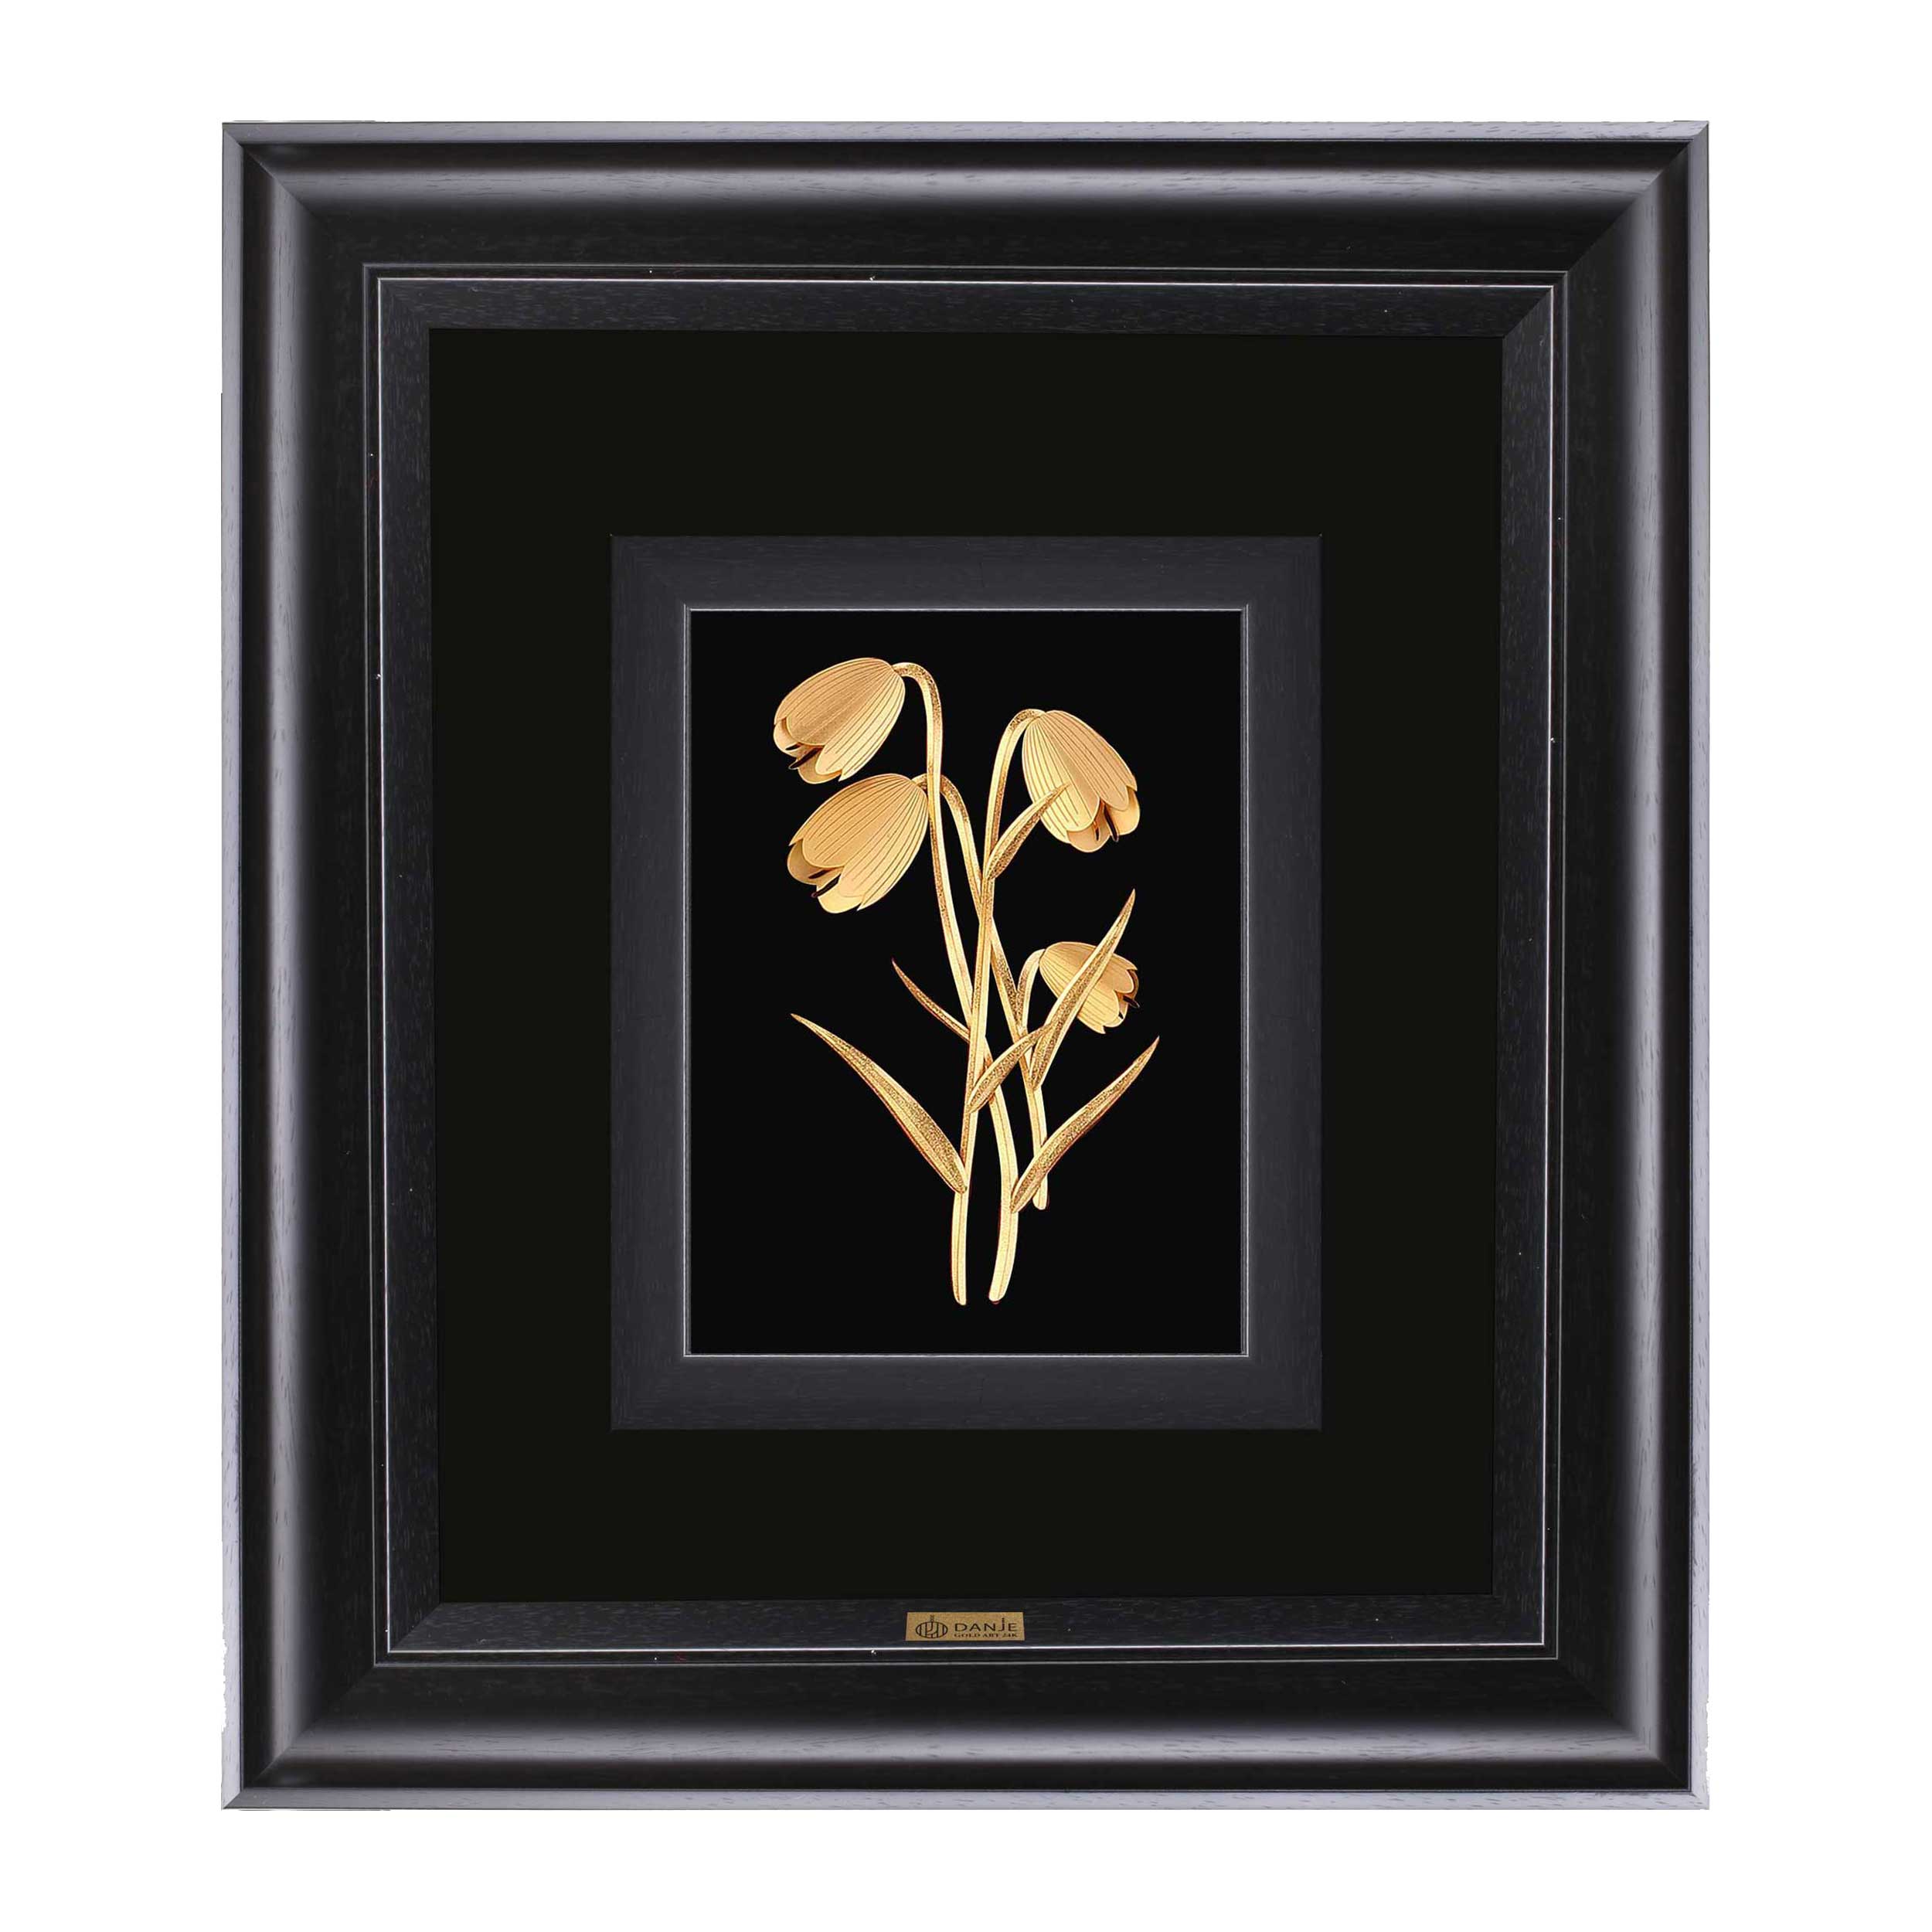 24 carat gold leaf panel with PVC frame, inverted tulip design, Danjeh brand